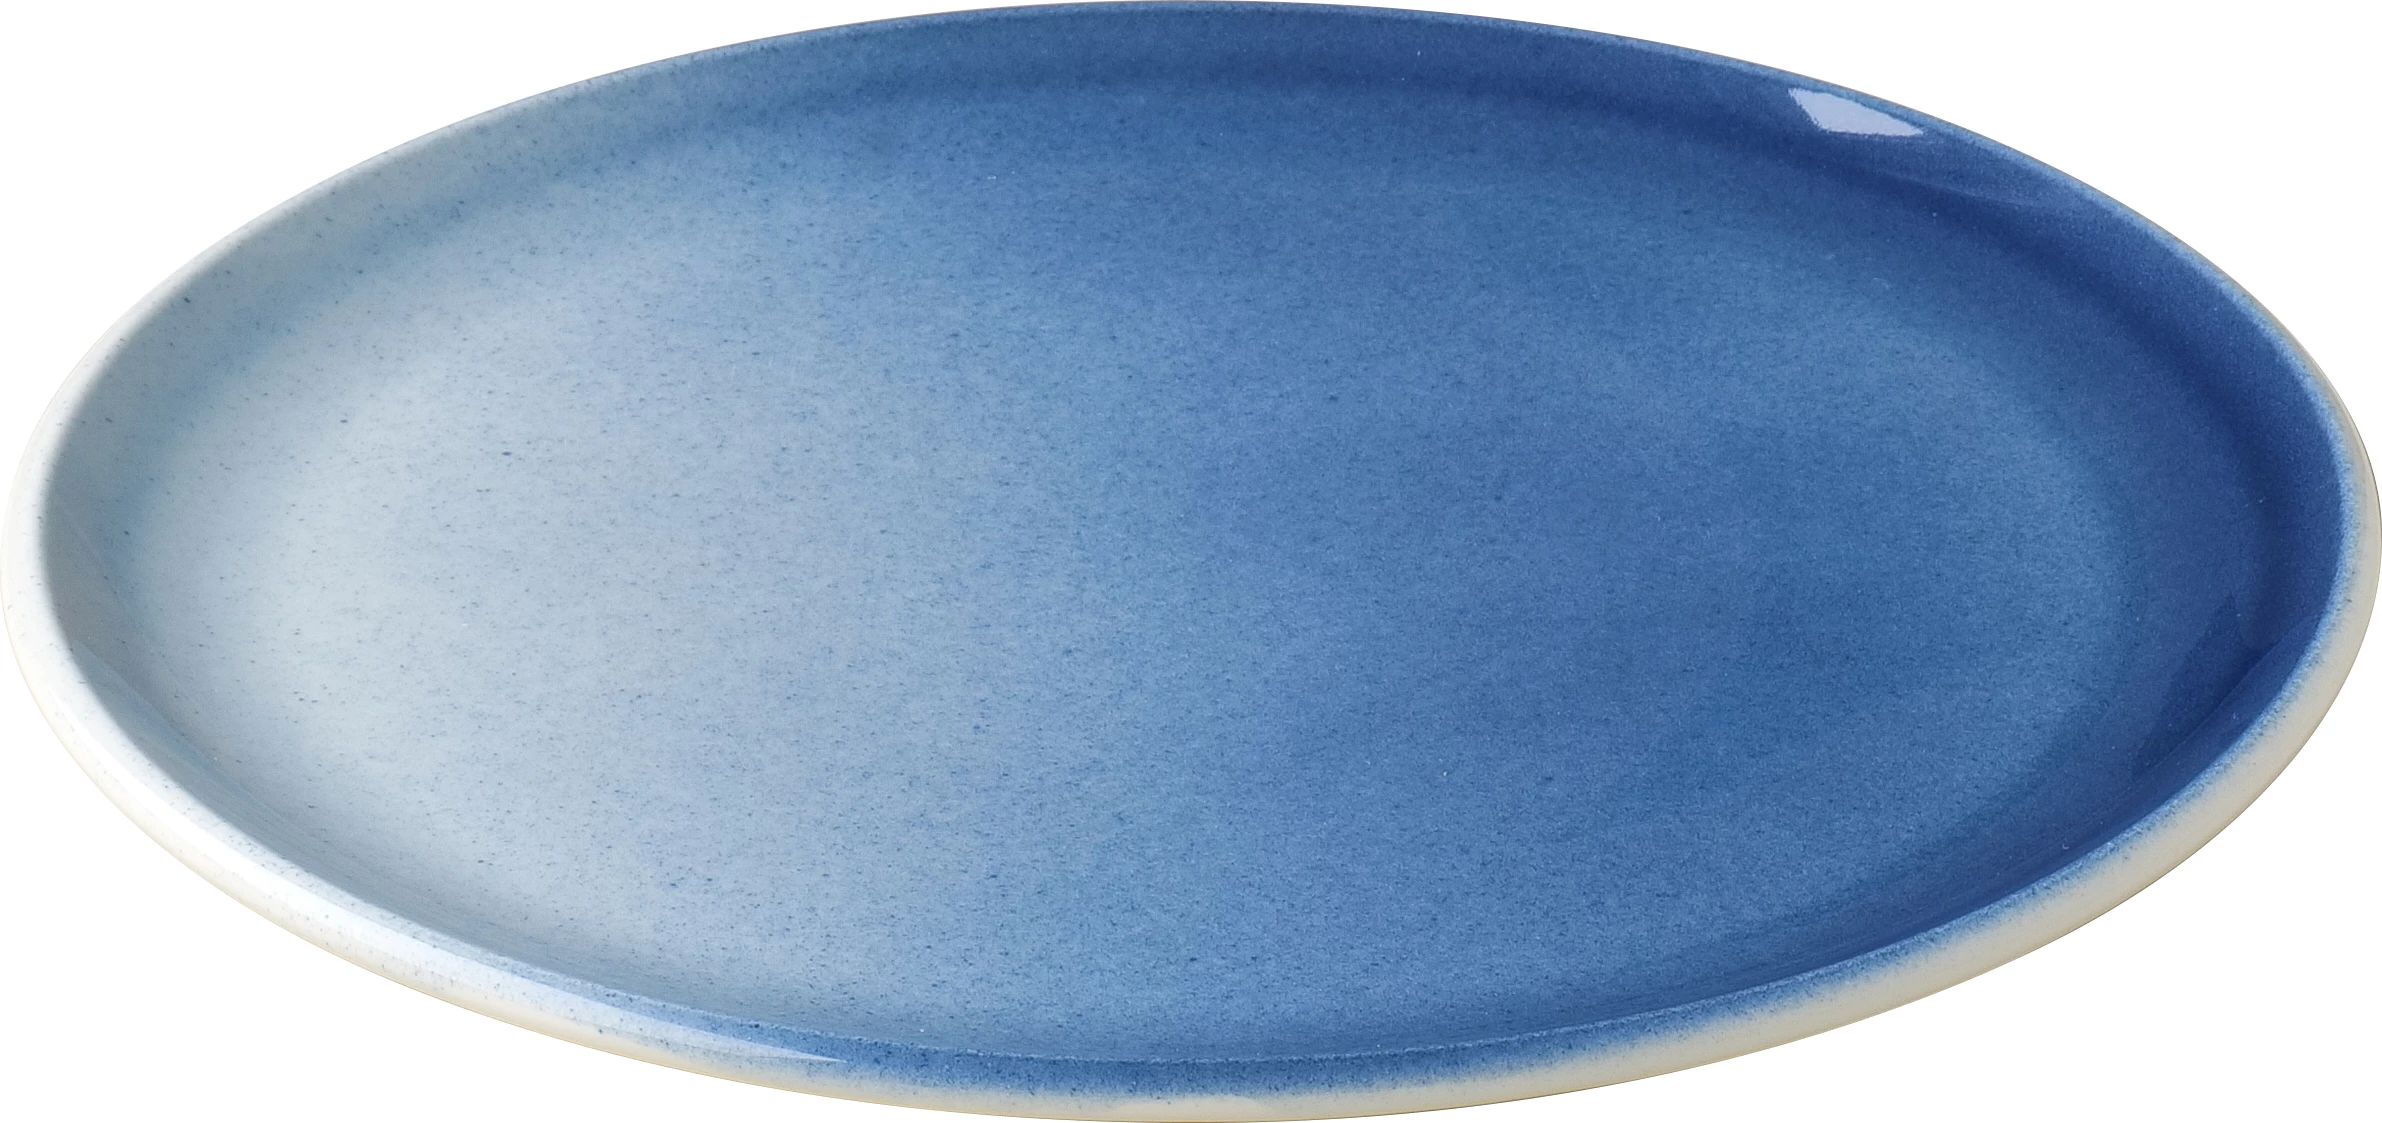 Figgjo Pax flad tallerken, blå, ø24 cm